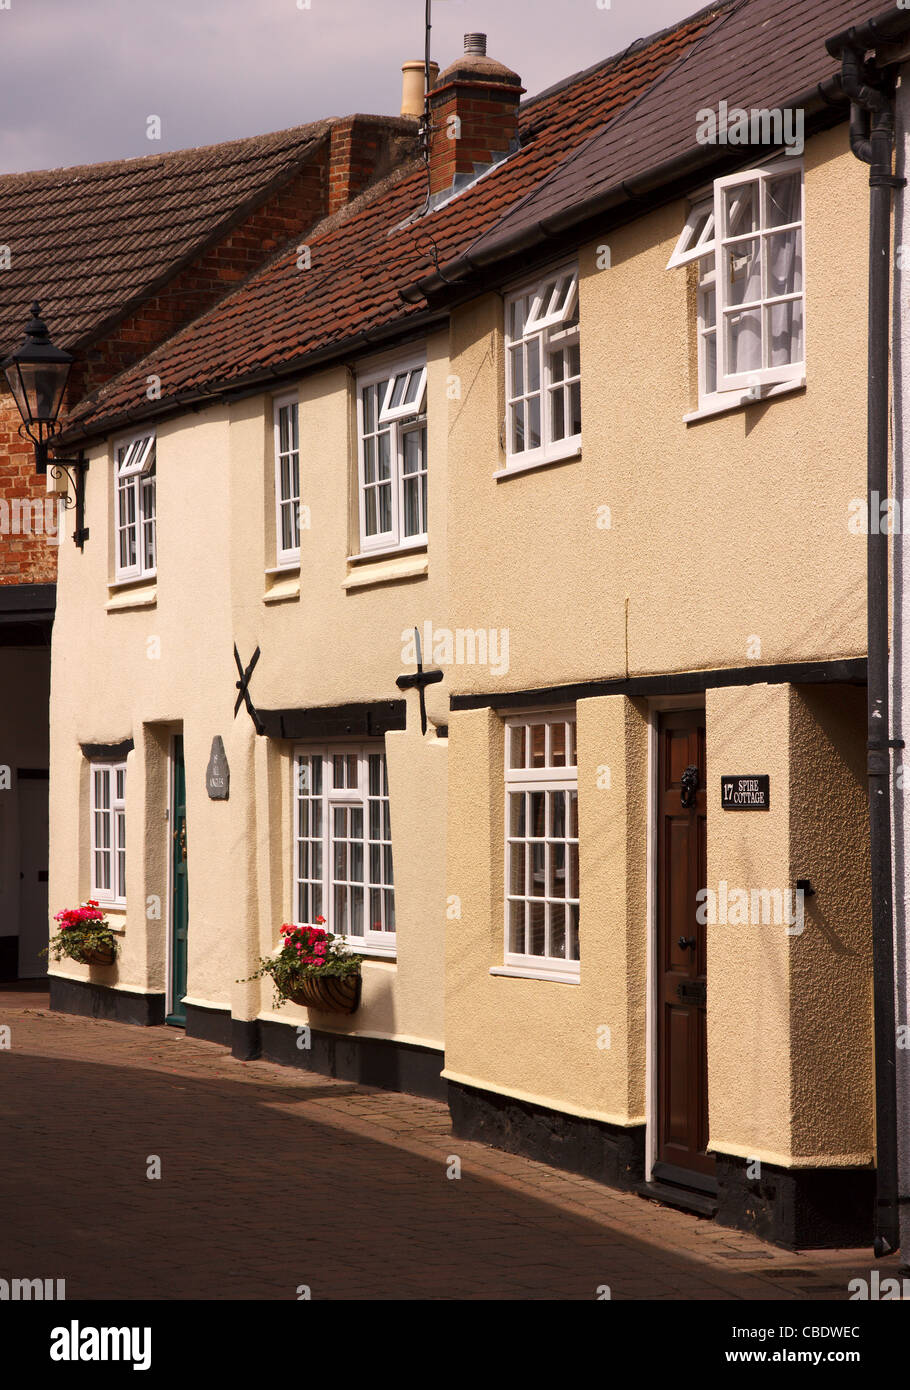 Fila a schiera di belle vecchi dipinti cottage inglese in stretta strada sul retro, Dean Street, Oakham, Rutland, England, Regno Unito Foto Stock